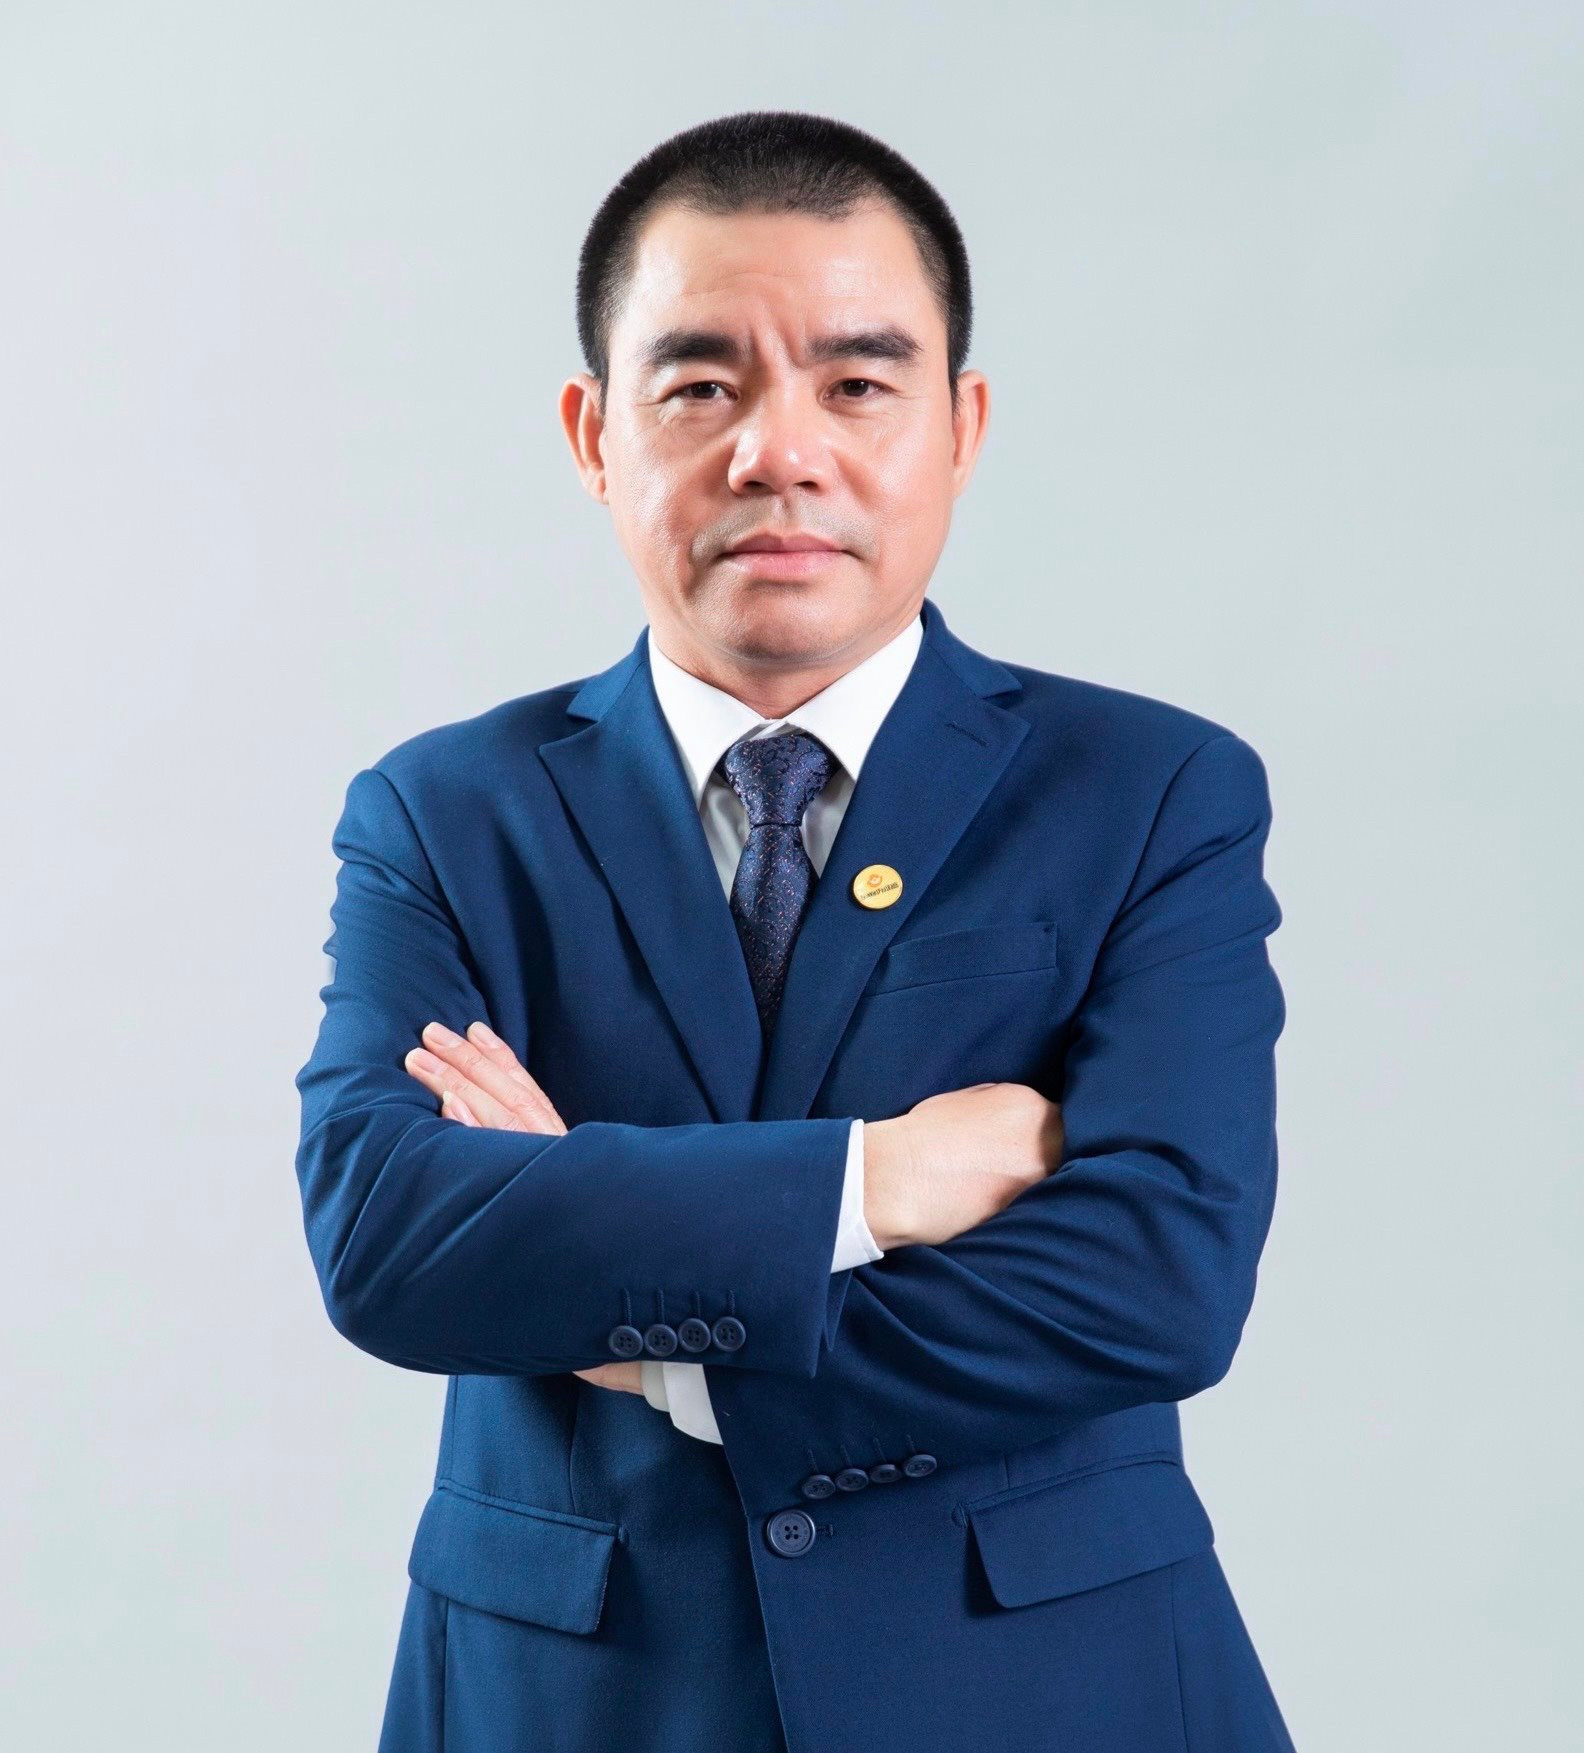 Lienvietpostbank bổ nhiệm ông Hồ Nam Tiến giữ Quyền Tổng giám đốc